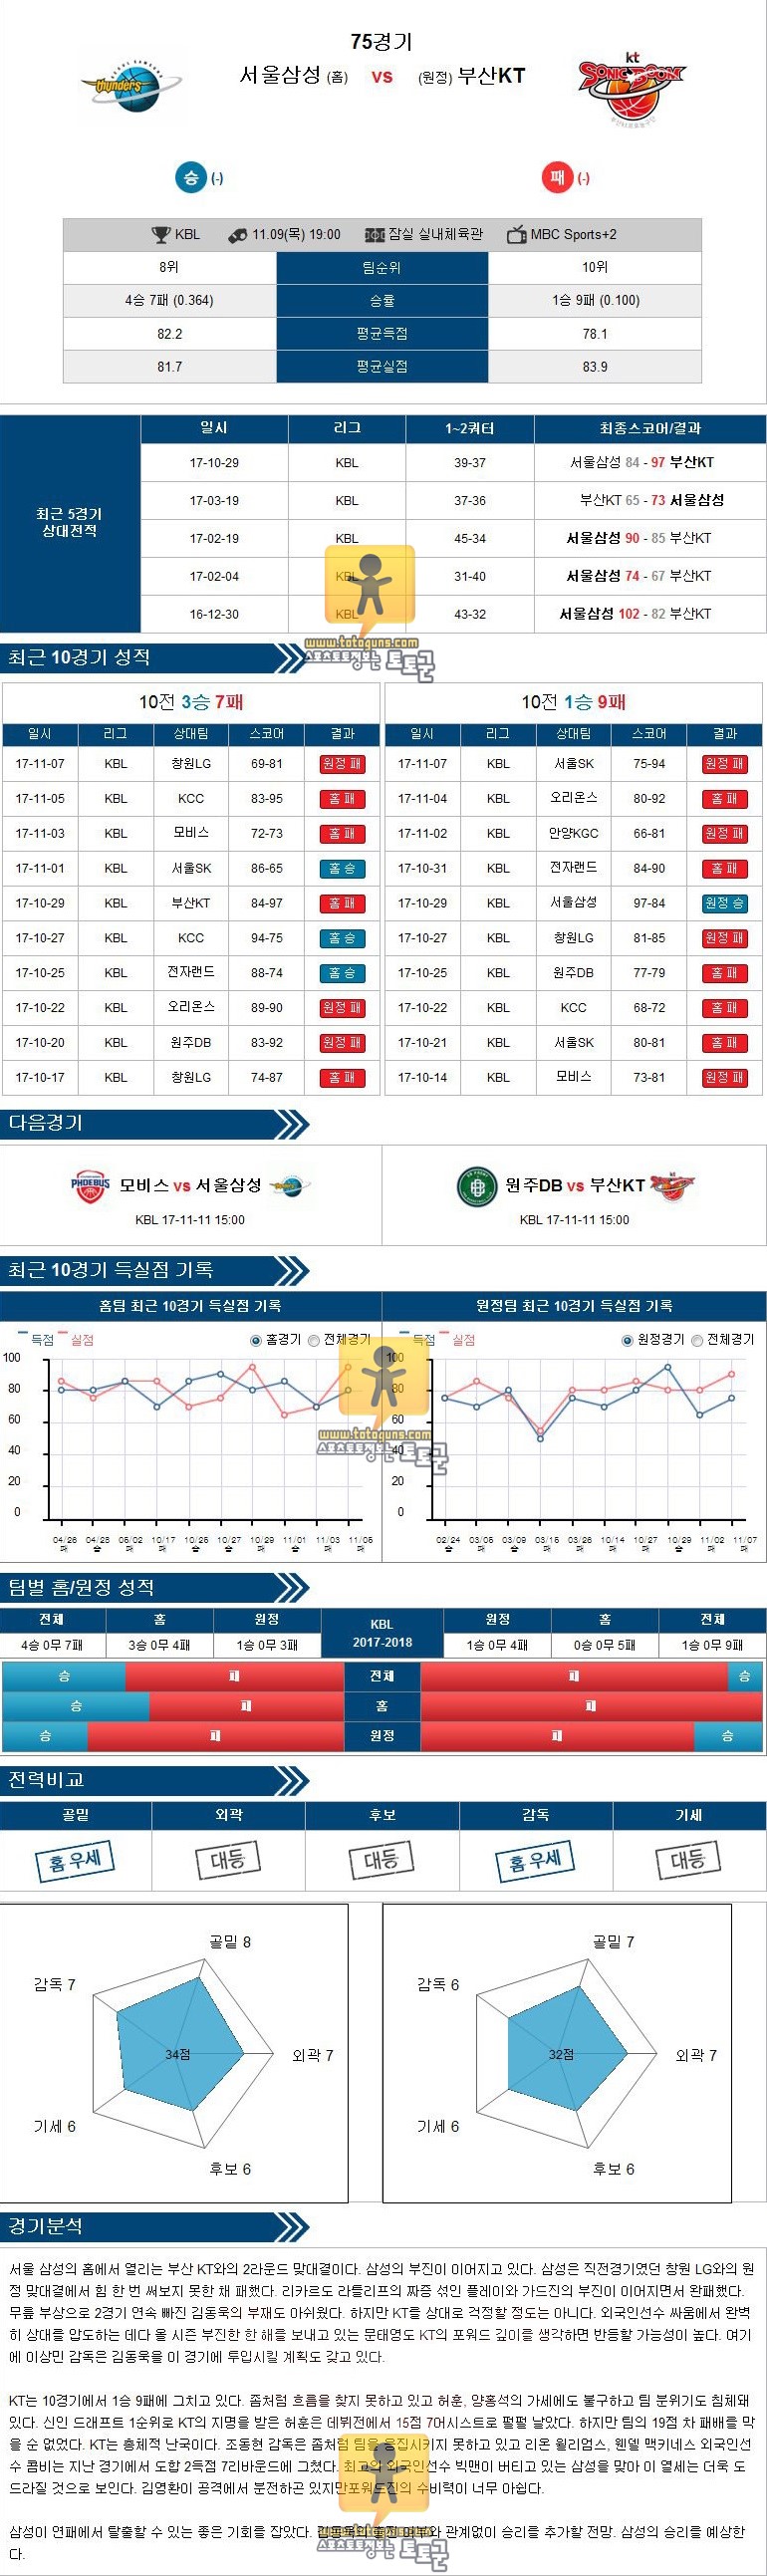 [KBL] 11월 09일 19:00 프로농구분석 서울삼성 VS 부산KT